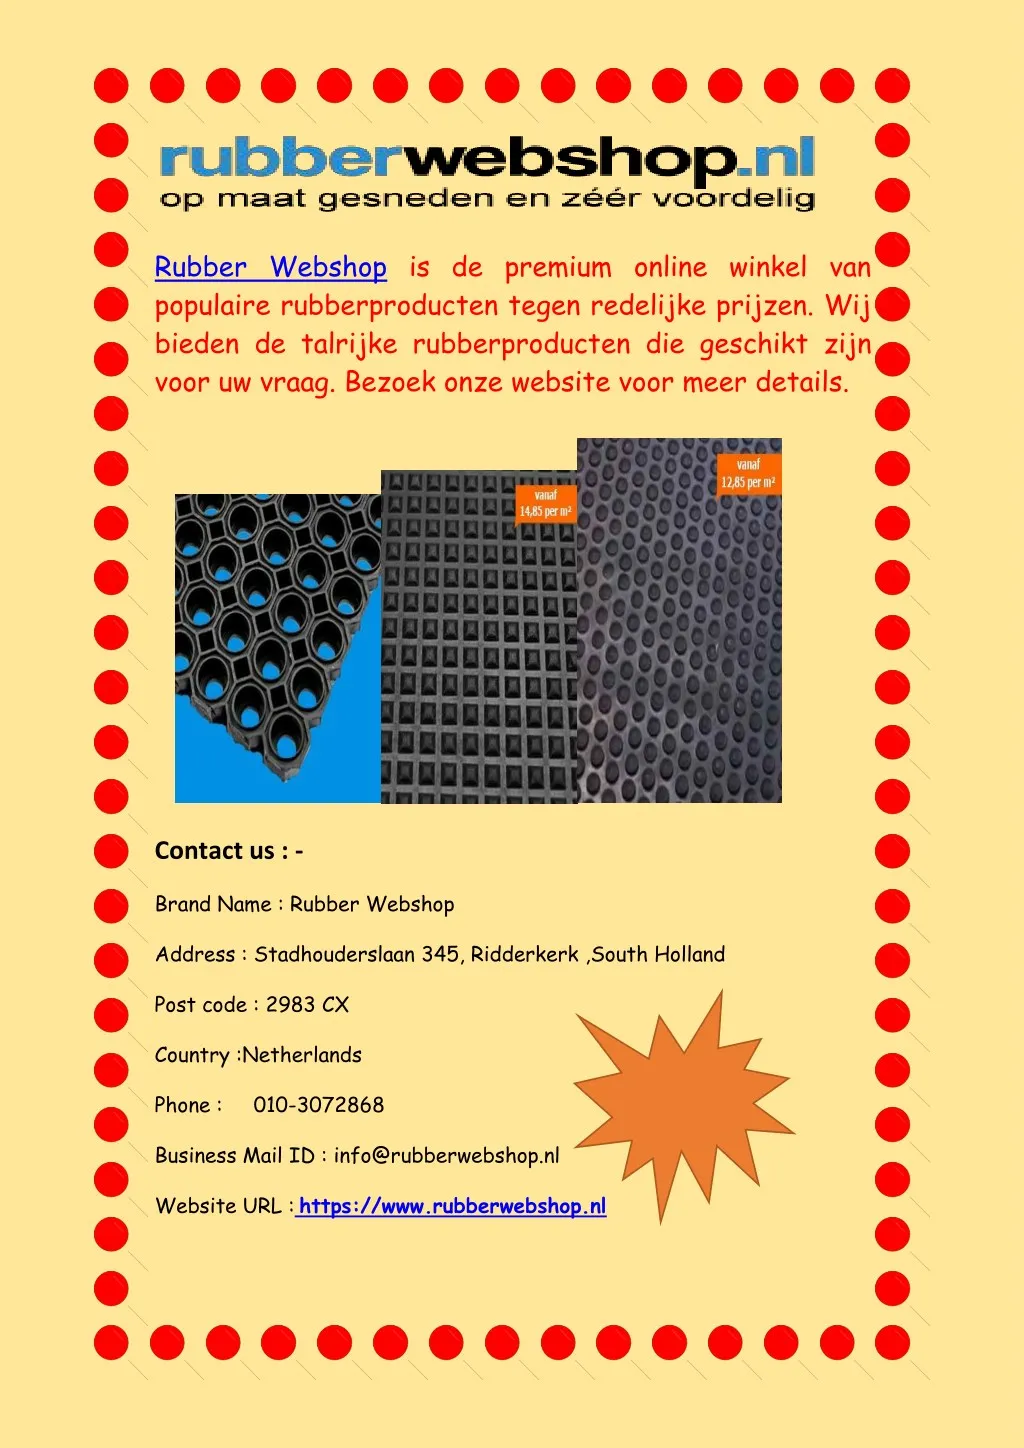 rubber webshop is de premium online winkel